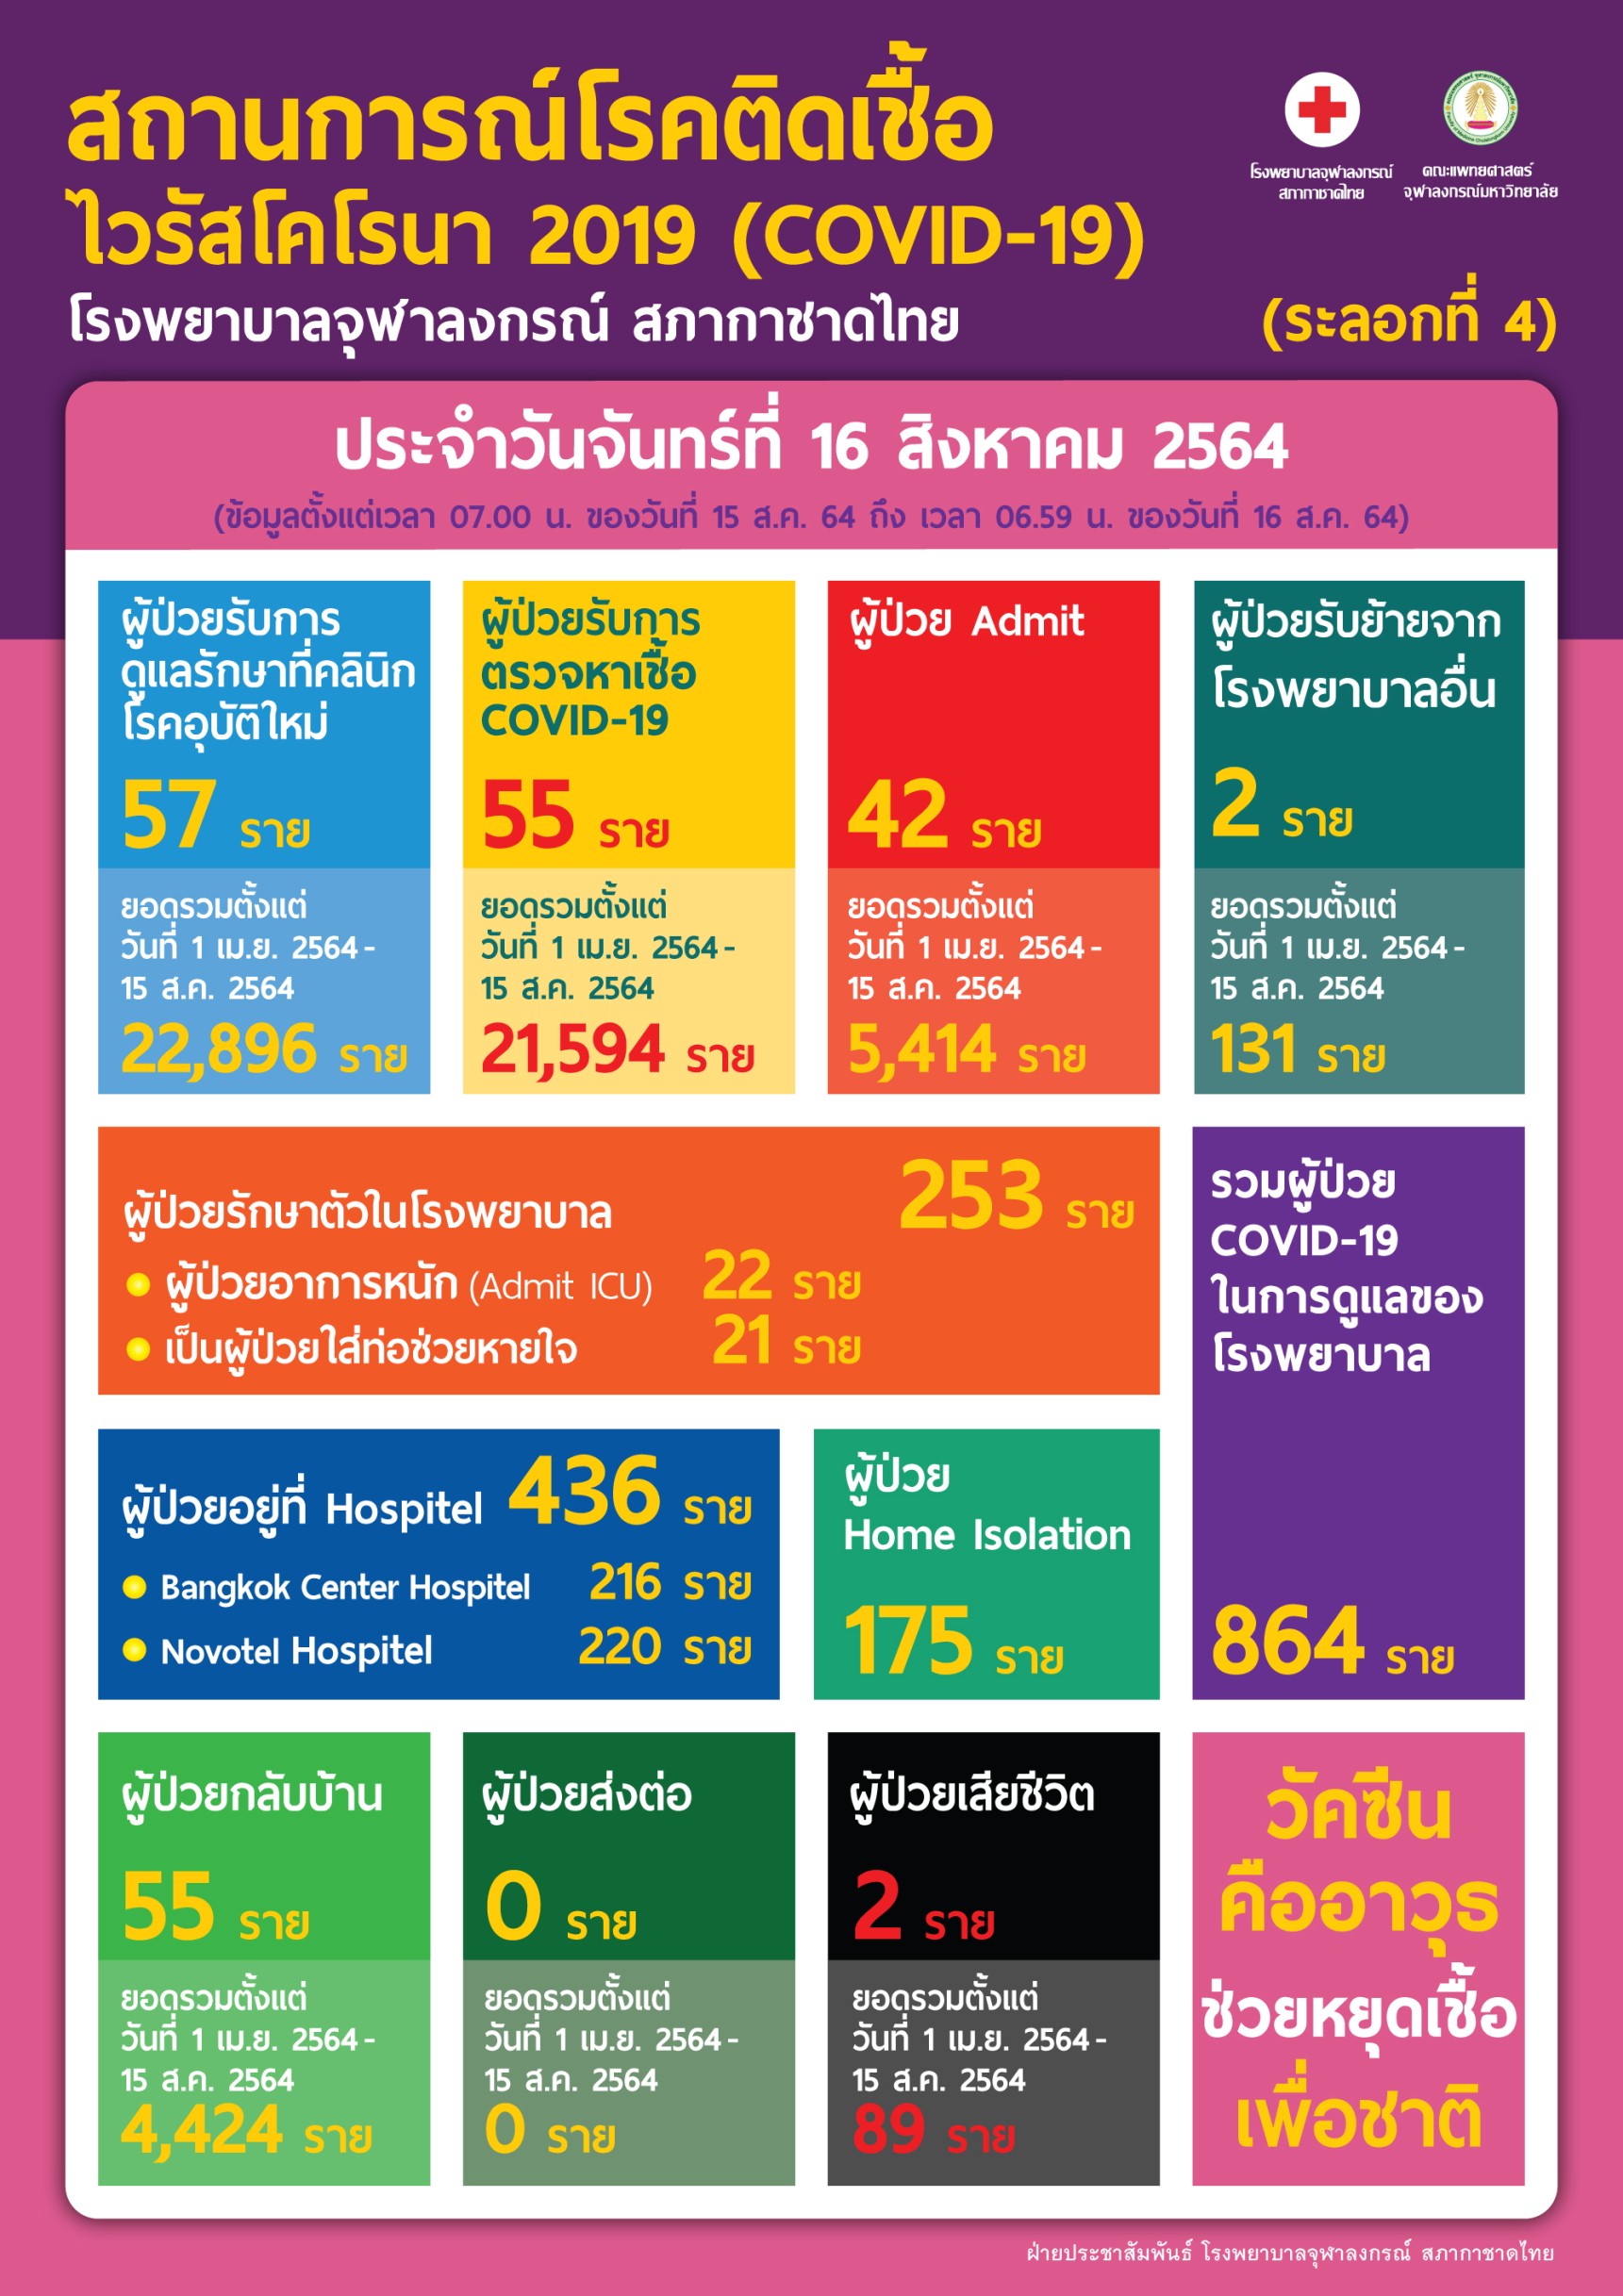 สถานการณ์โรคติดเชื้อไวรัสโคโรนา 2019 (COVID-19) (ระลอกที่ 4) โรงพยาบาลจุฬาลงกรณ์ สภากาชาดไทย ประจำวันจันทร์ที่ 16 สิงหาคม 2564